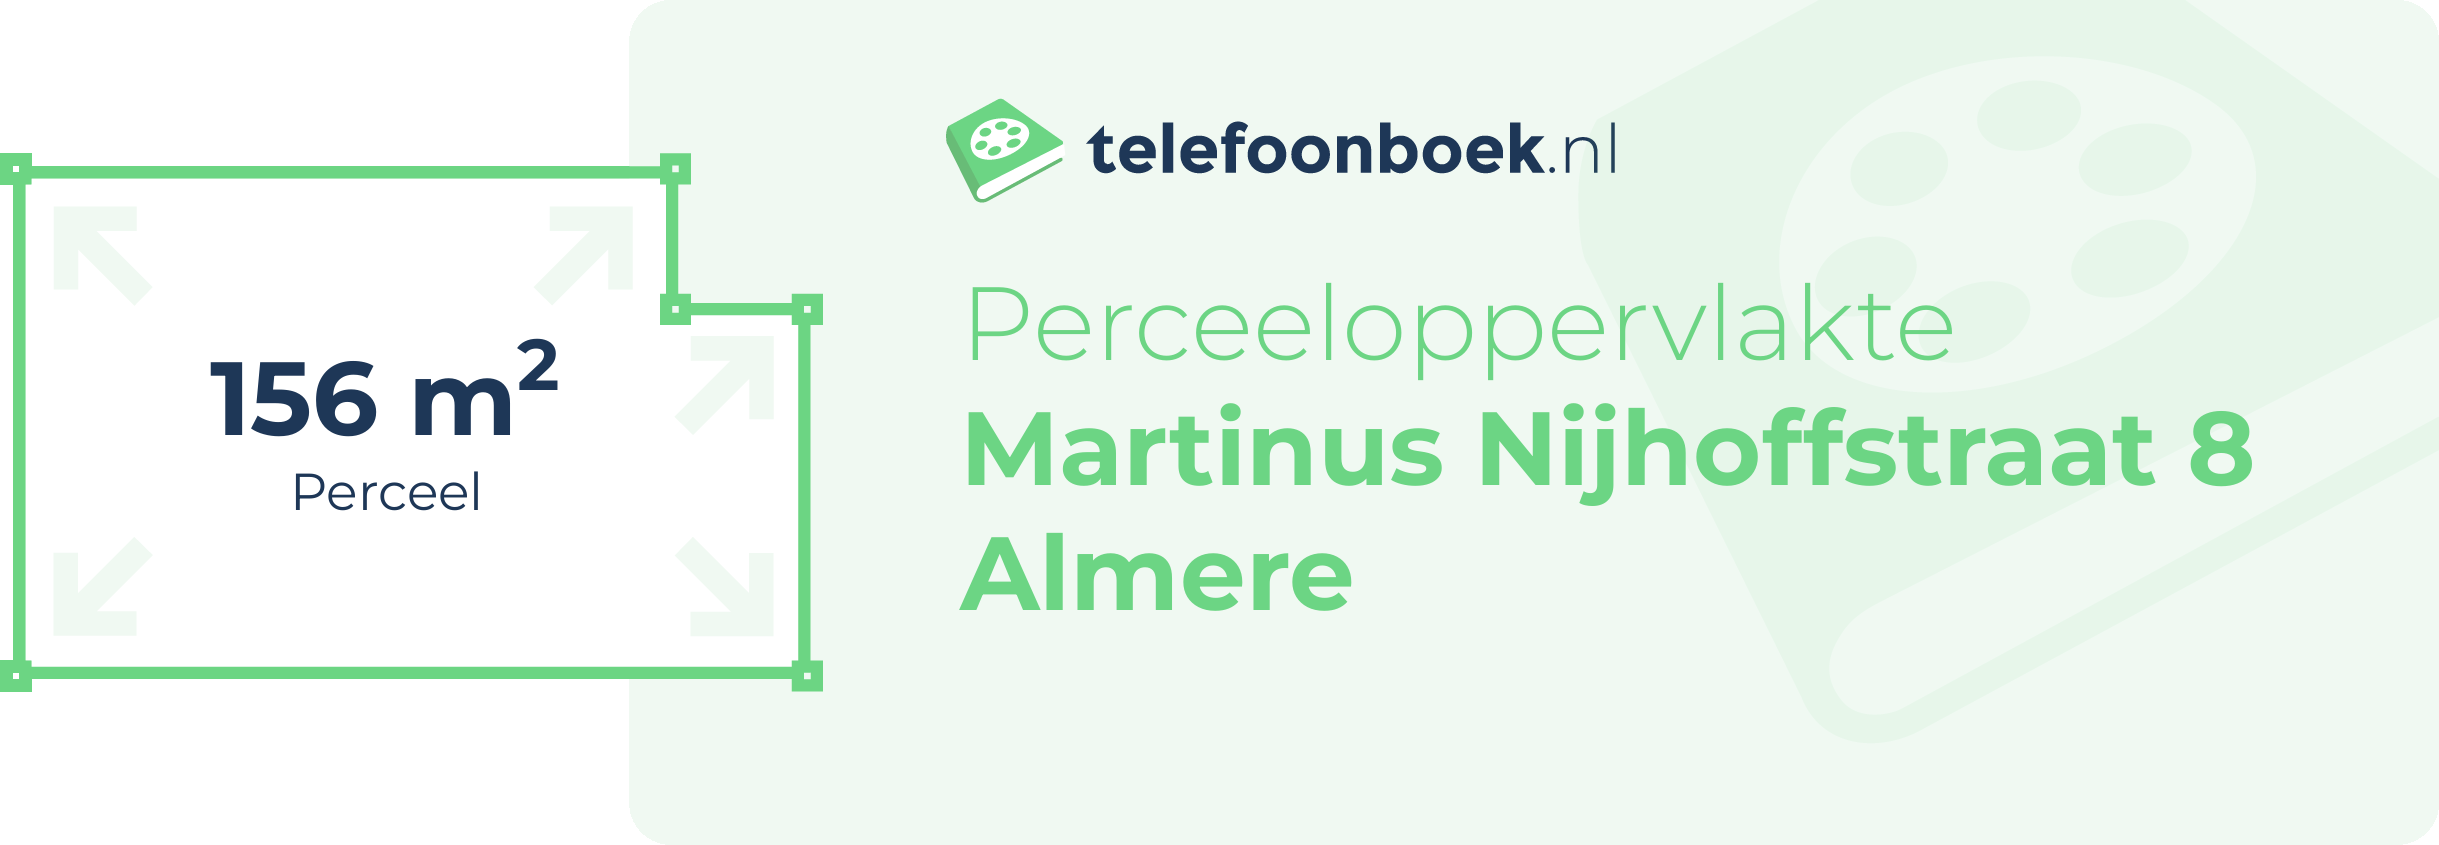 Perceeloppervlakte Martinus Nijhoffstraat 8 Almere